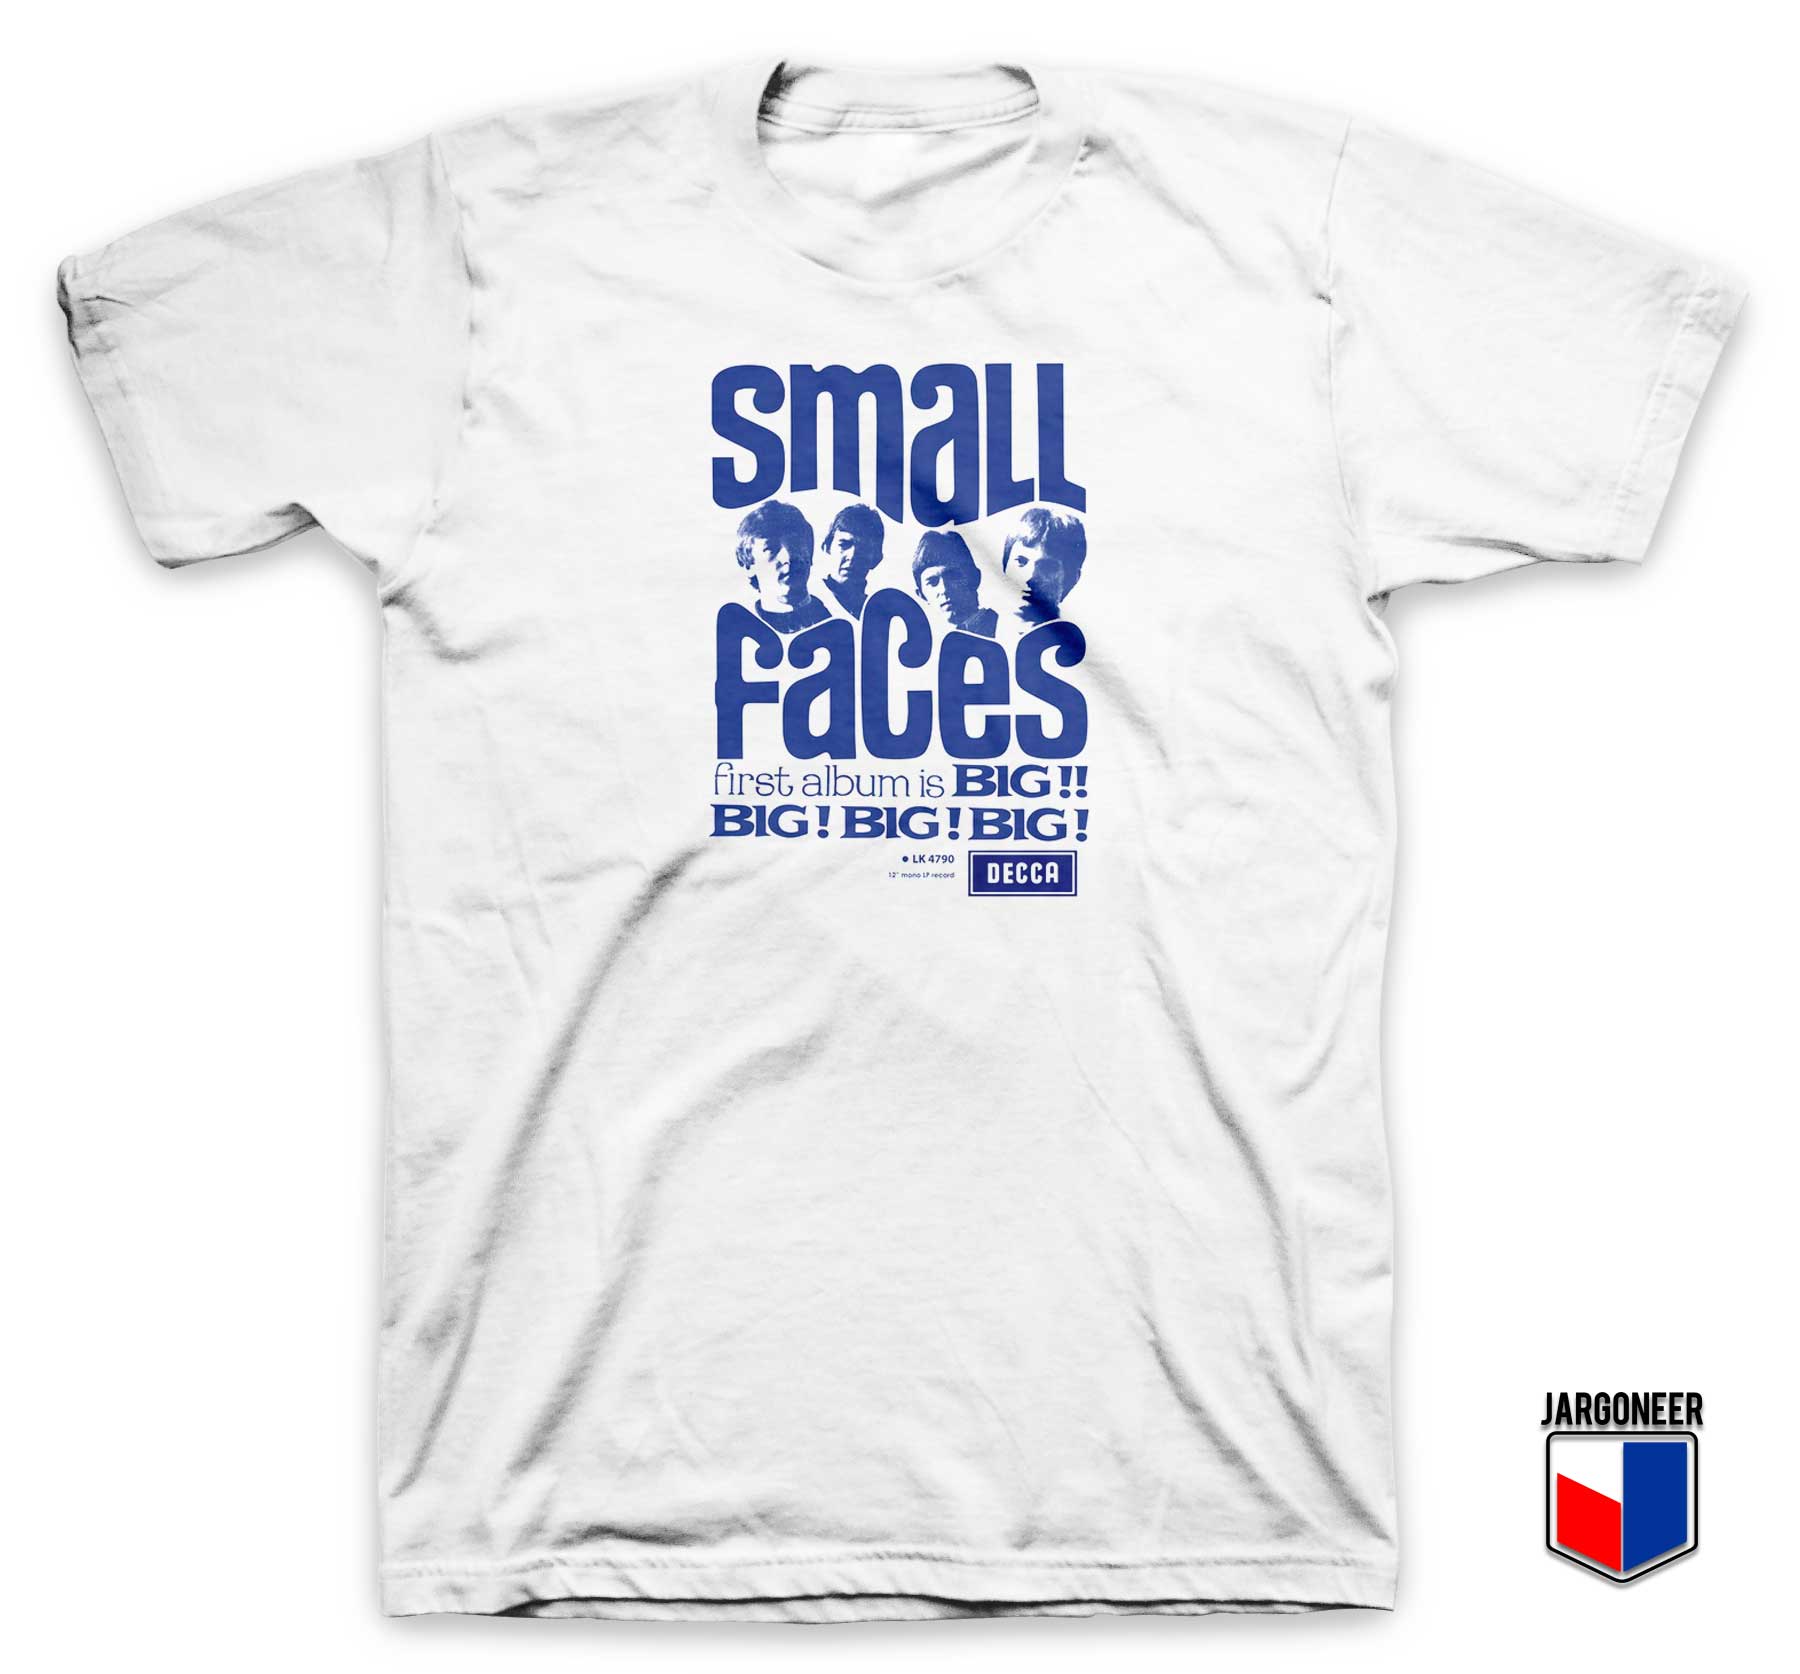 Small Face Big Big Big T Shirt - Shop Unique Graphic Cool Shirt Designs